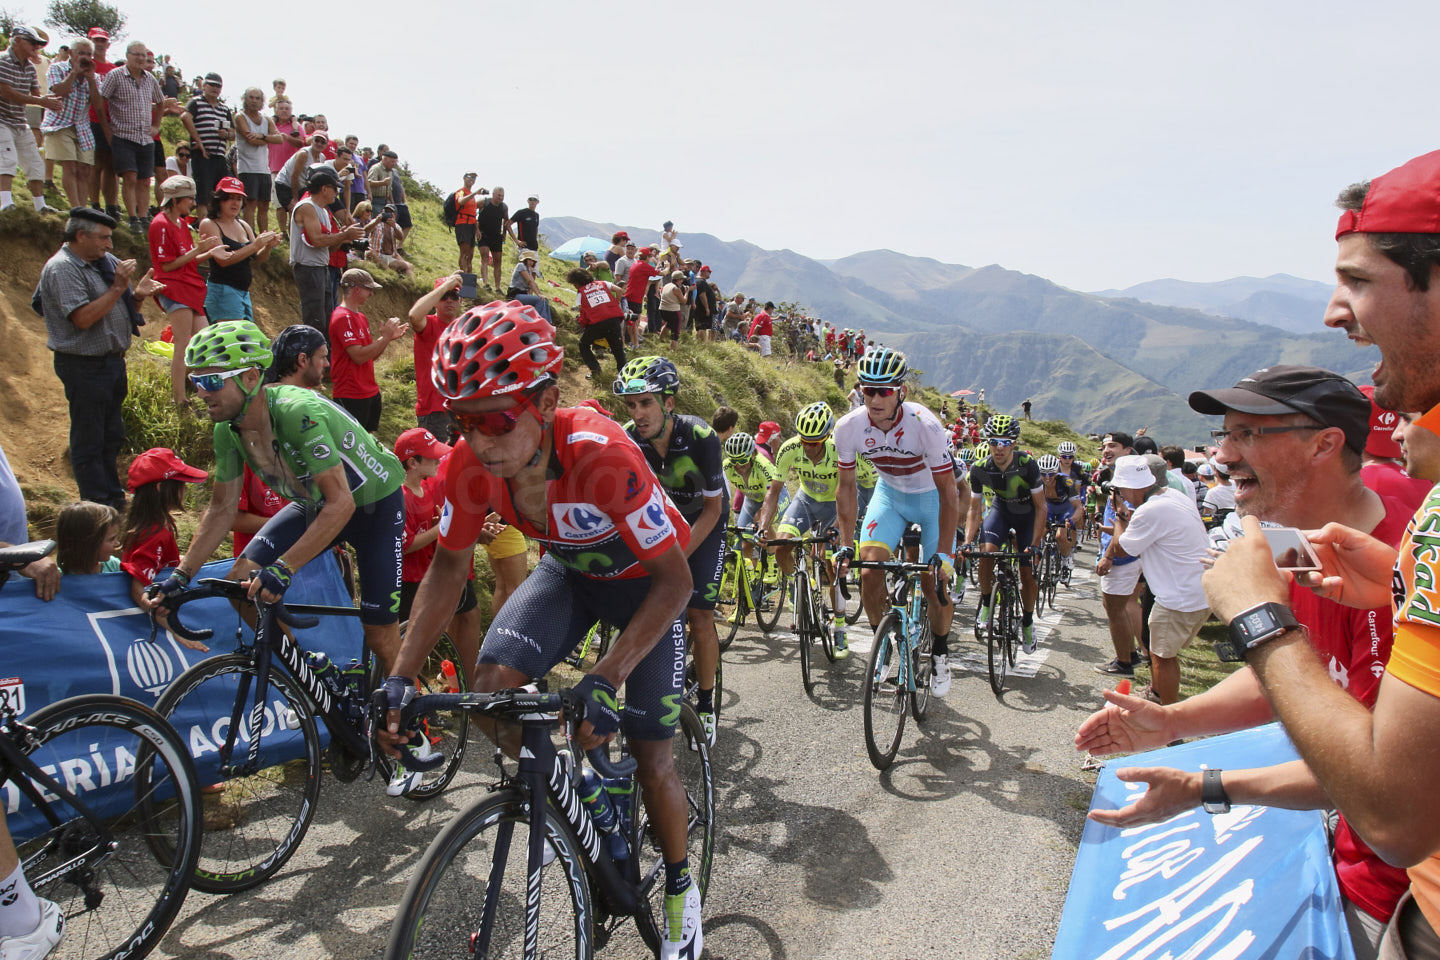 photo actualité: les coureurs du Tour de France vont bientôt repassés dans les Pyrénées